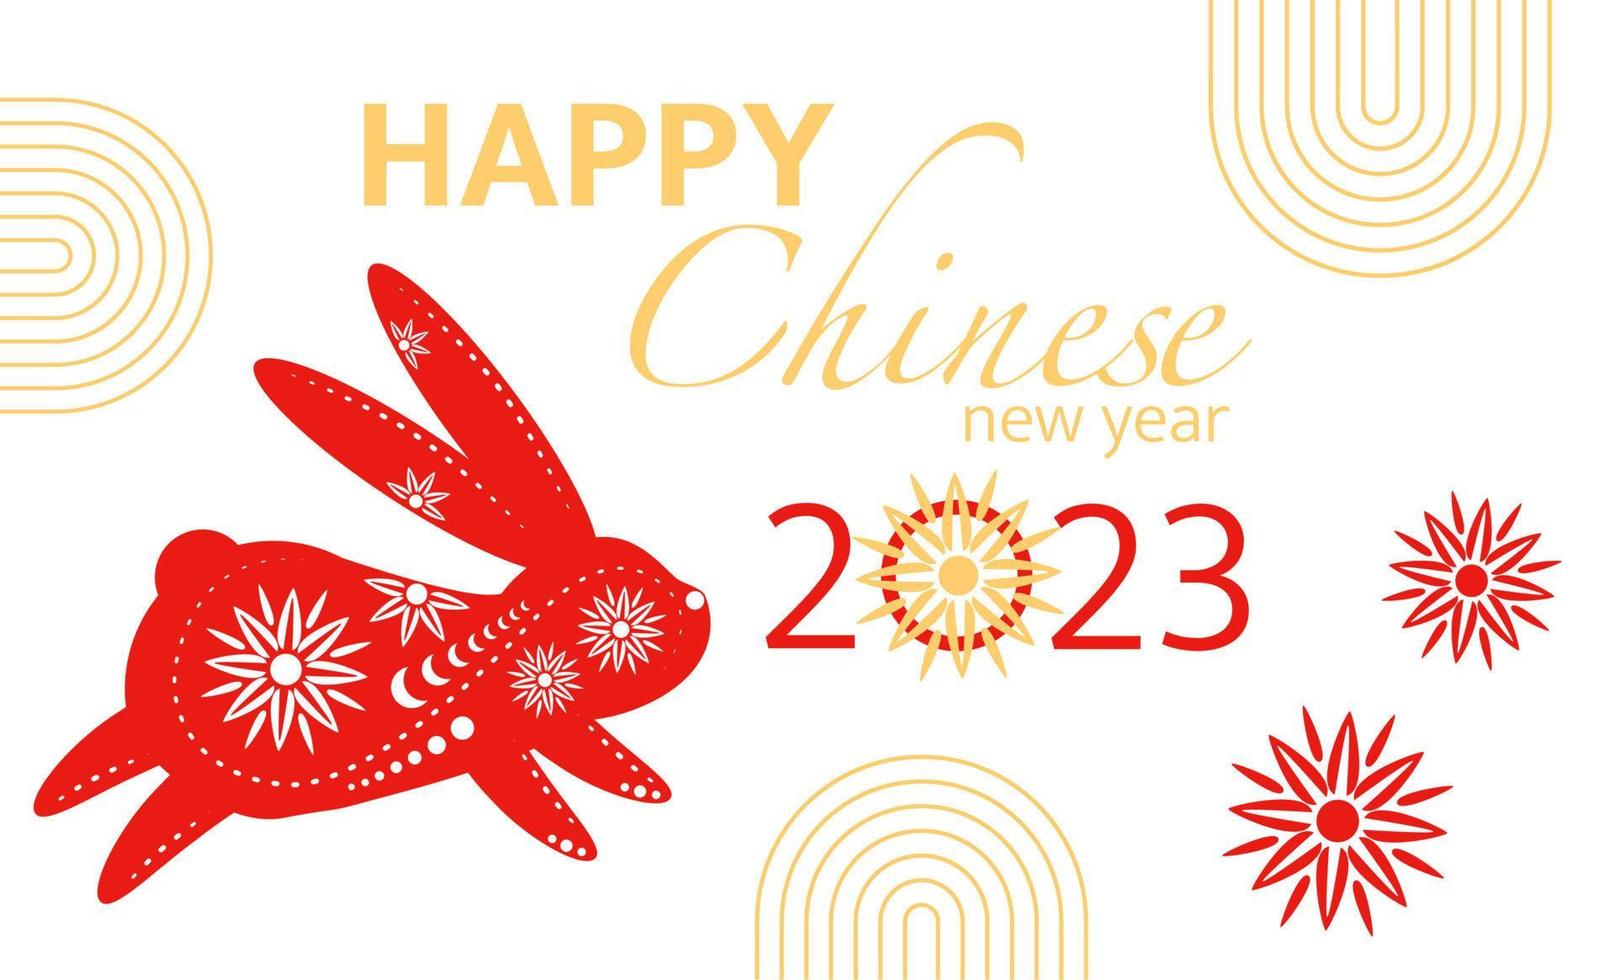 Chinese nieuw jaar groet kaart met decoratief konijn, 2023 nieuw jaar uitnodiging, kaart, groet, ansichtkaart, geschenk, vector illustratie.